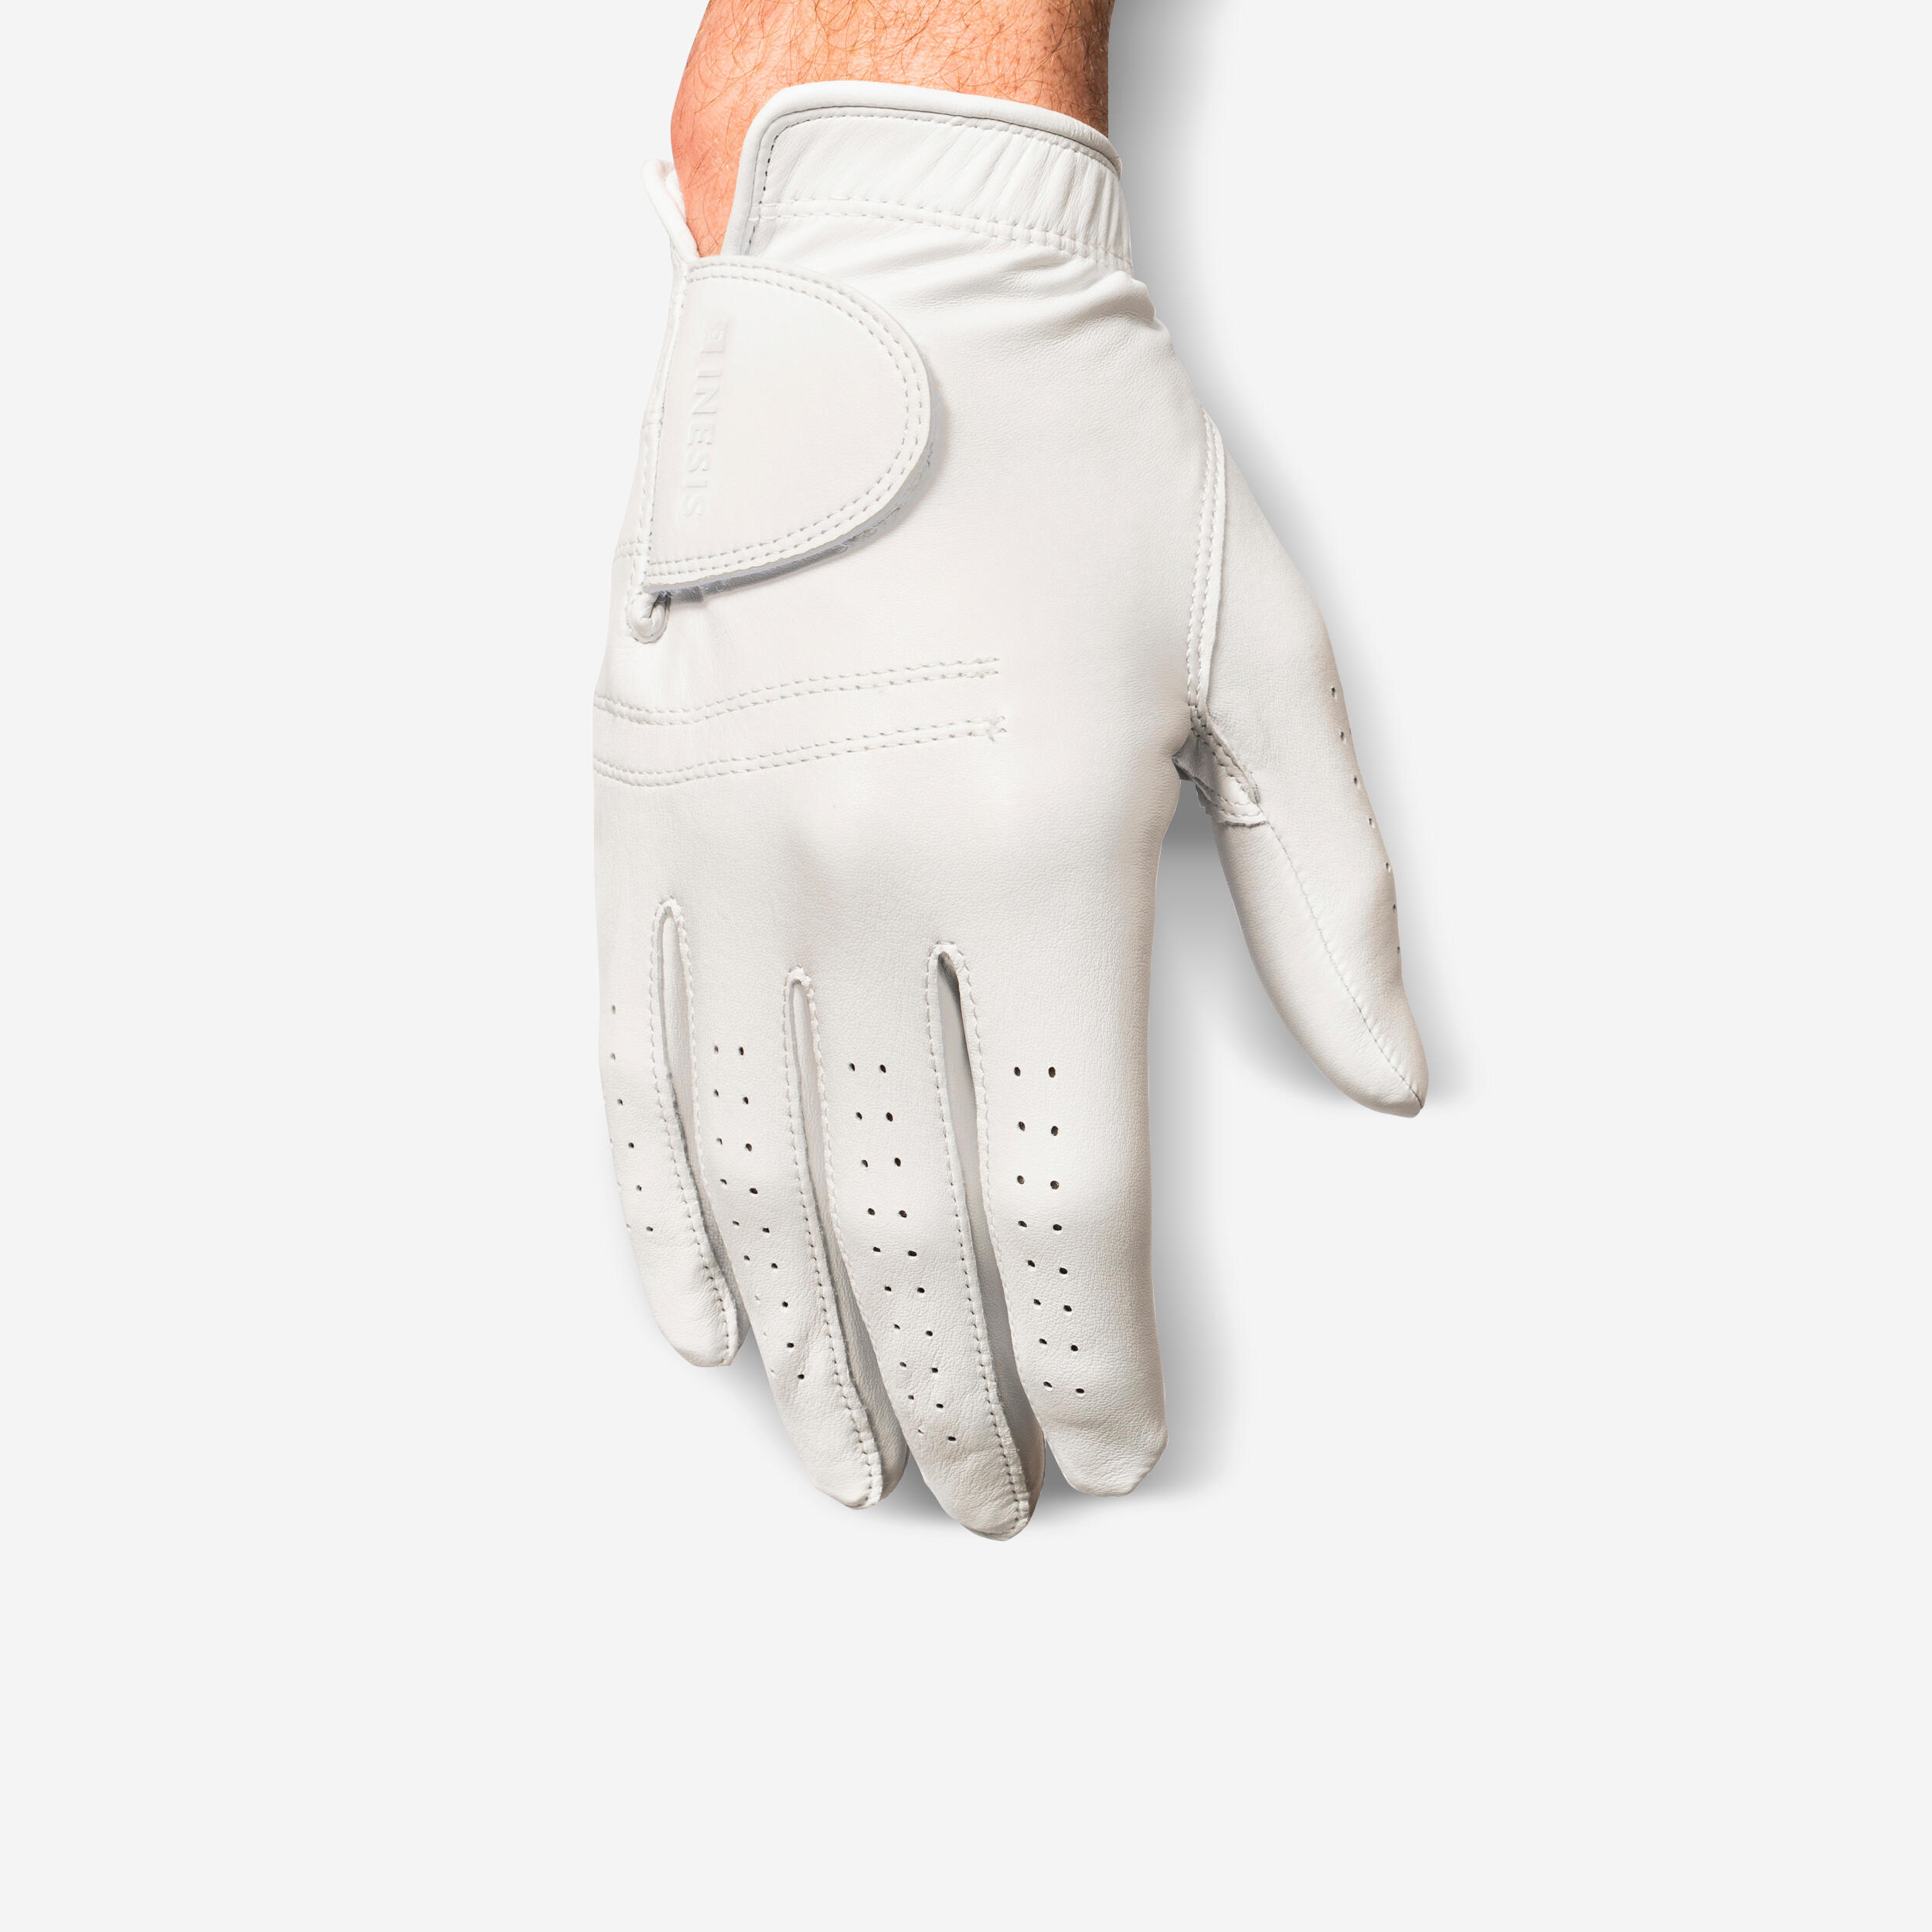 Men’s LH Cabretta Golf Glove